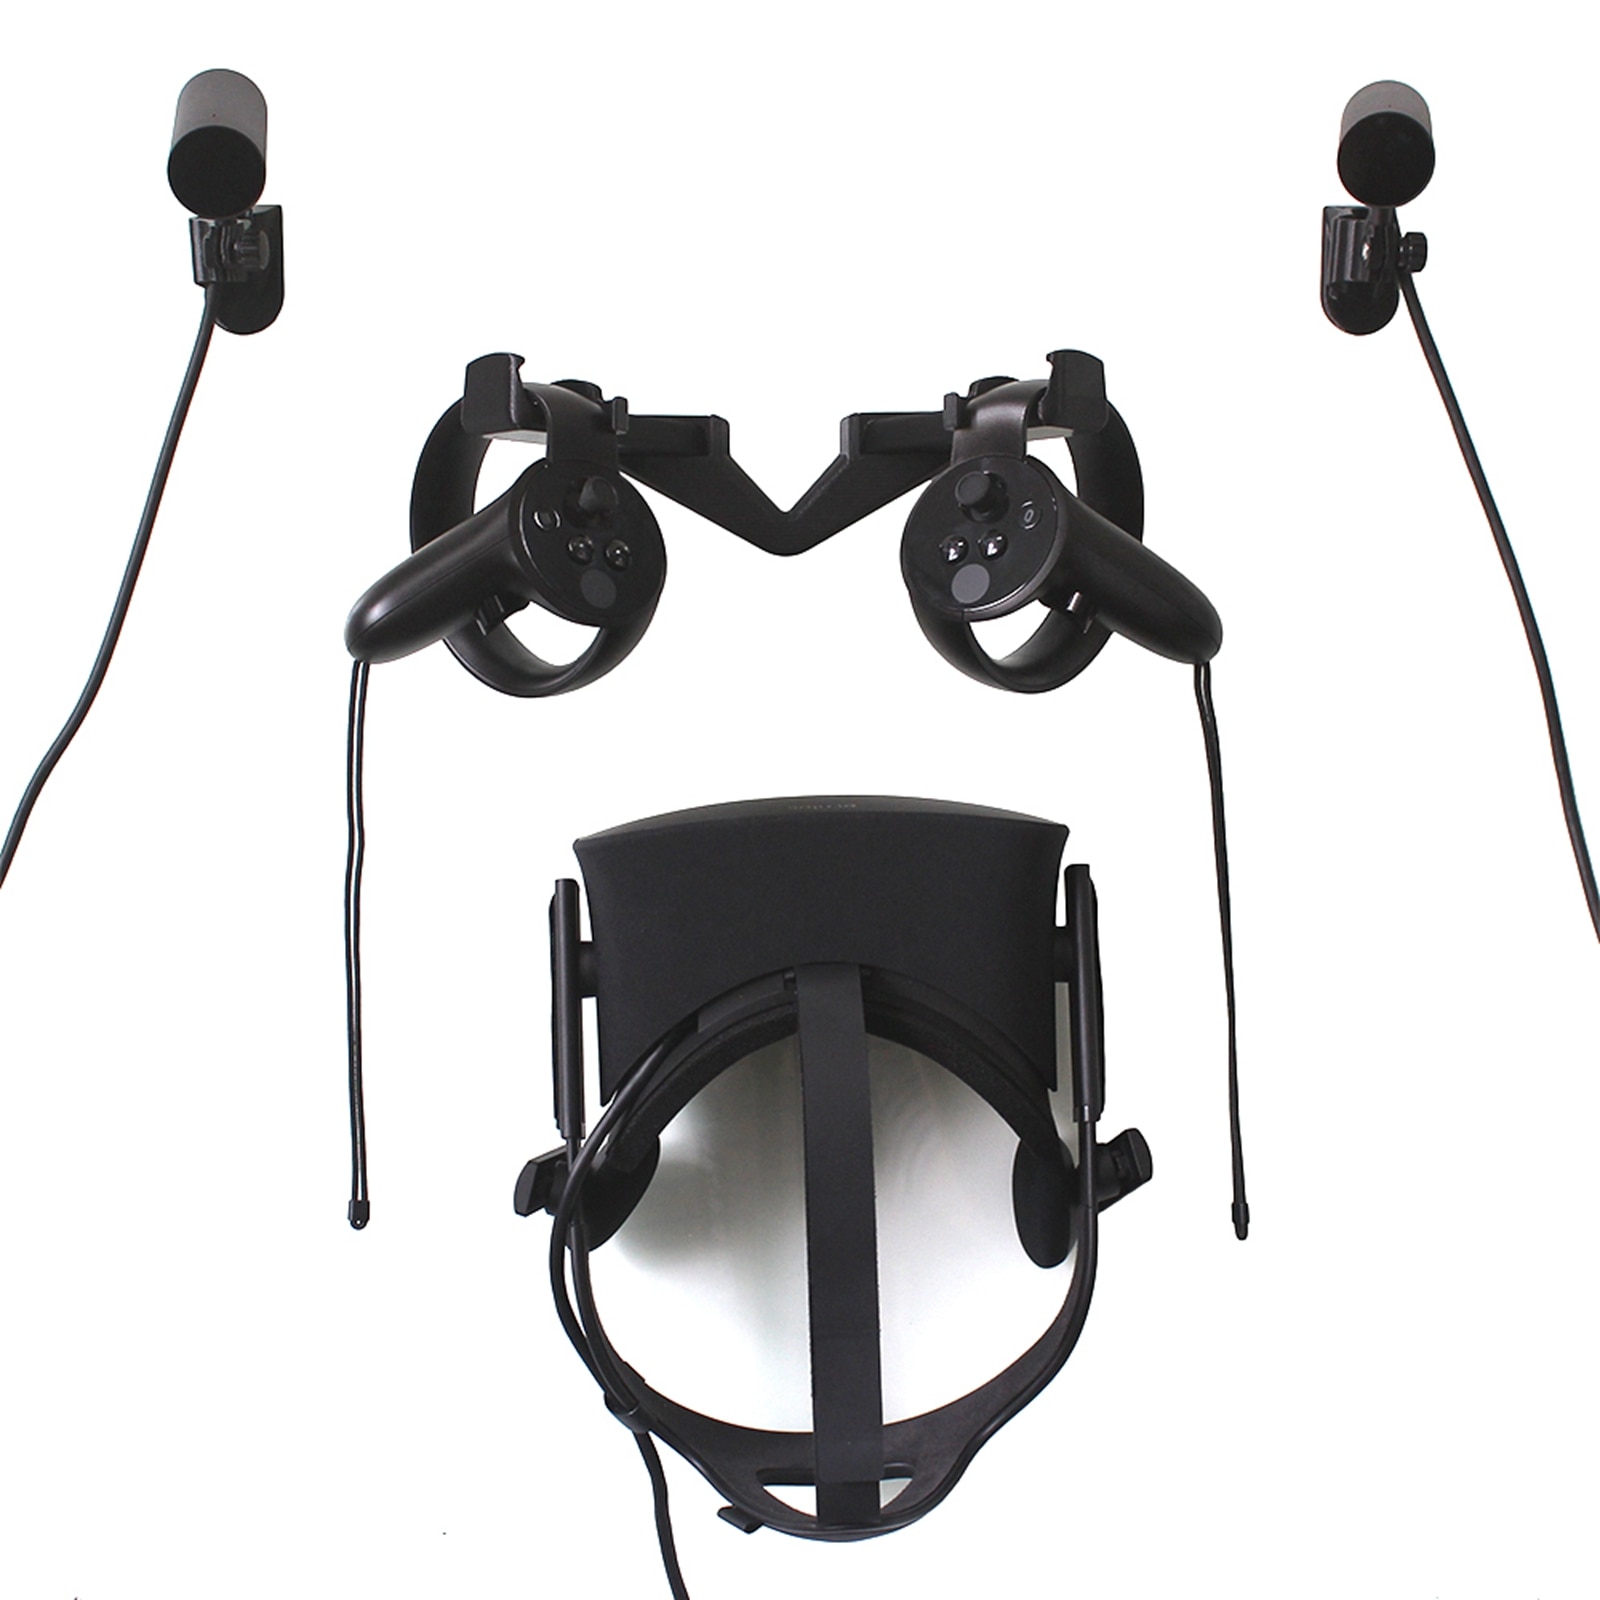 Muur Haak Stand Mount voor Oculus Rift CV1 VR Headset & Touch & Sensor Muur Haak Stand Voor VR Oculus headset